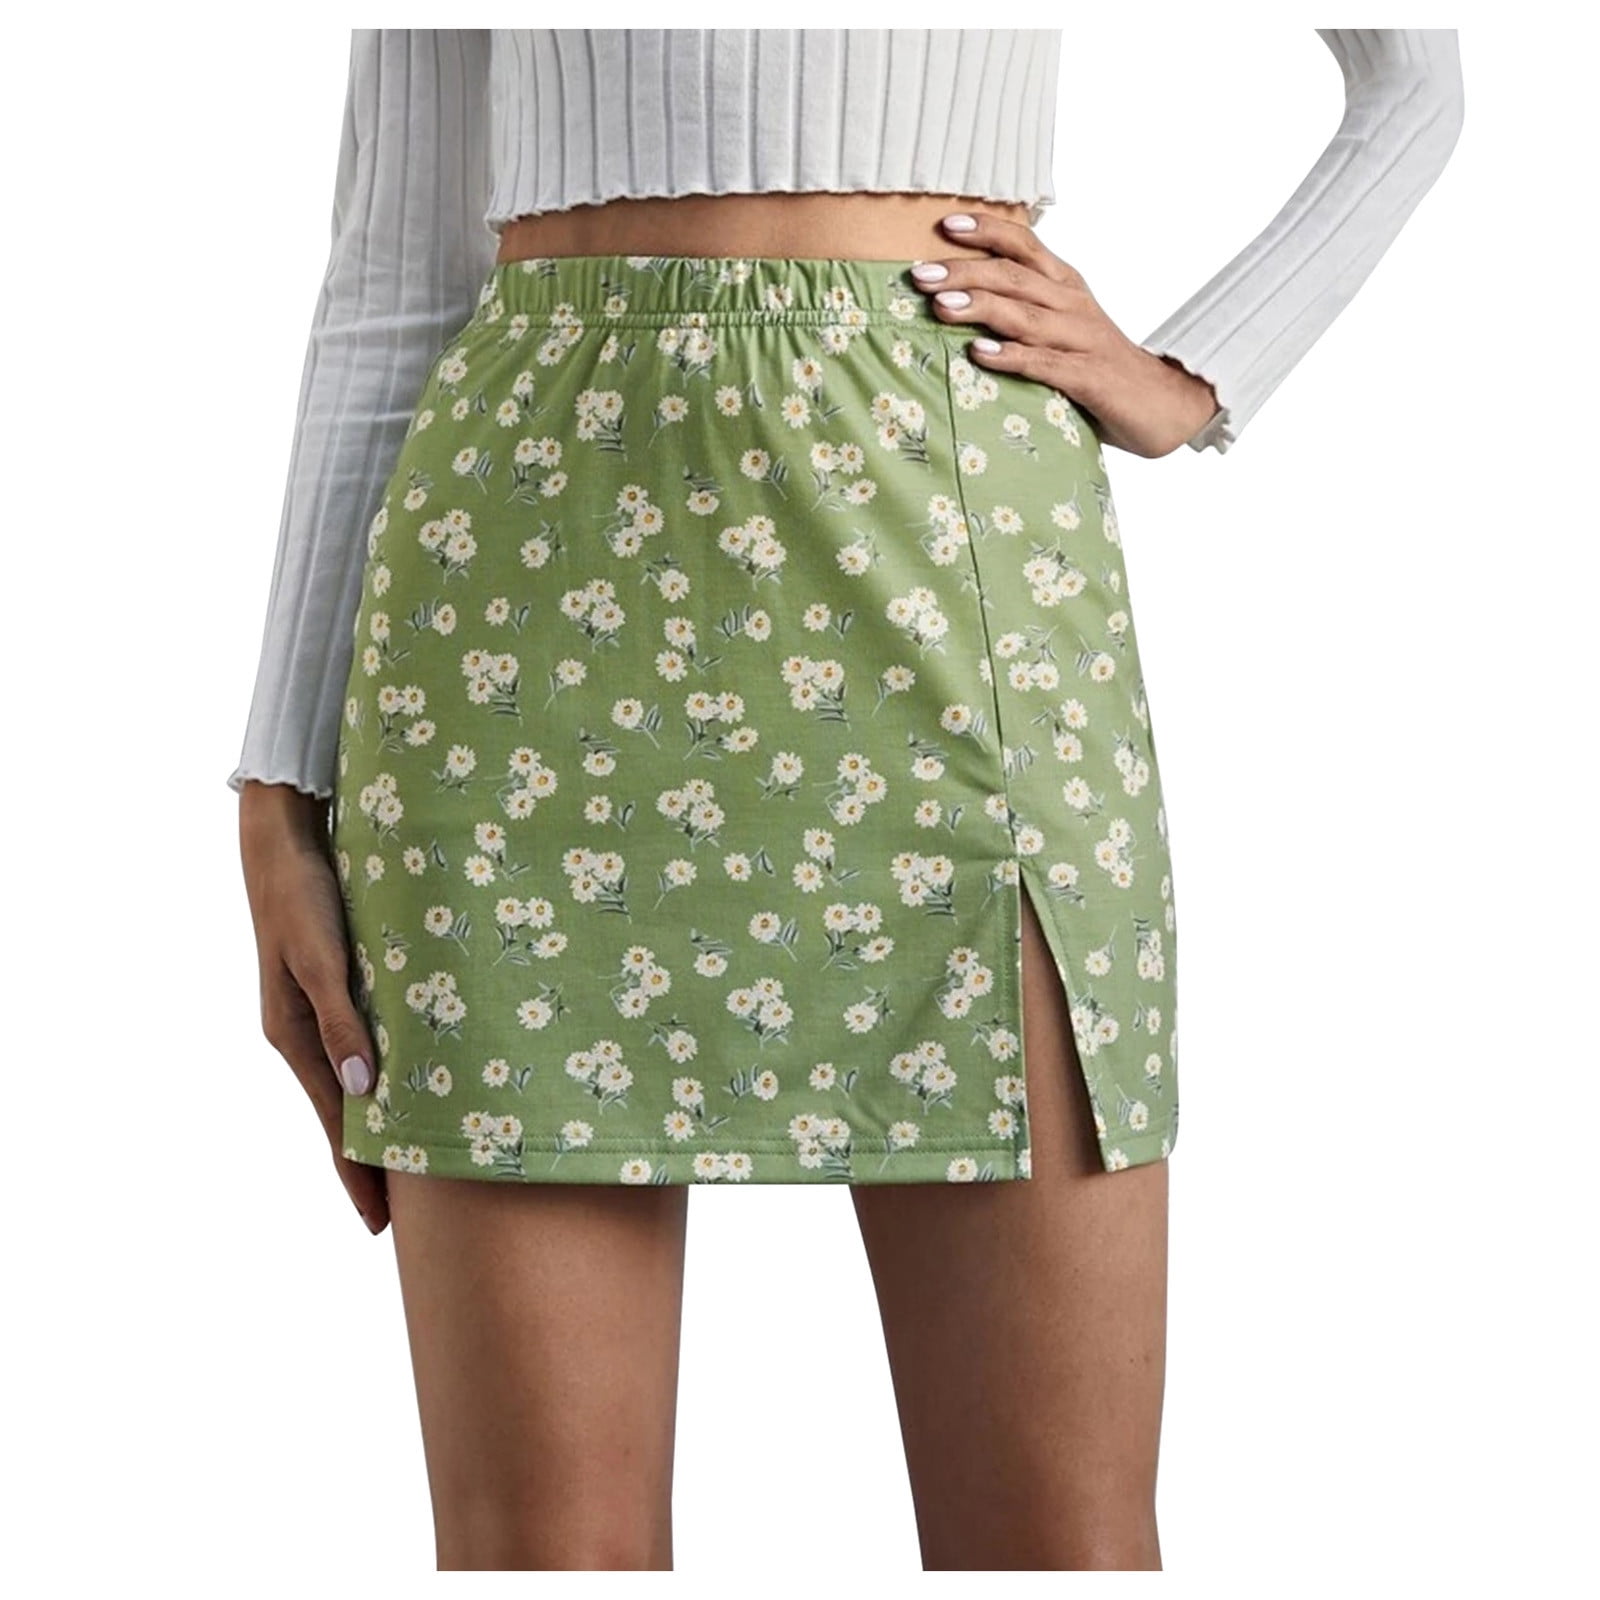 xiuh flowy skirt women's elastic waist open side hem print short skirt ...